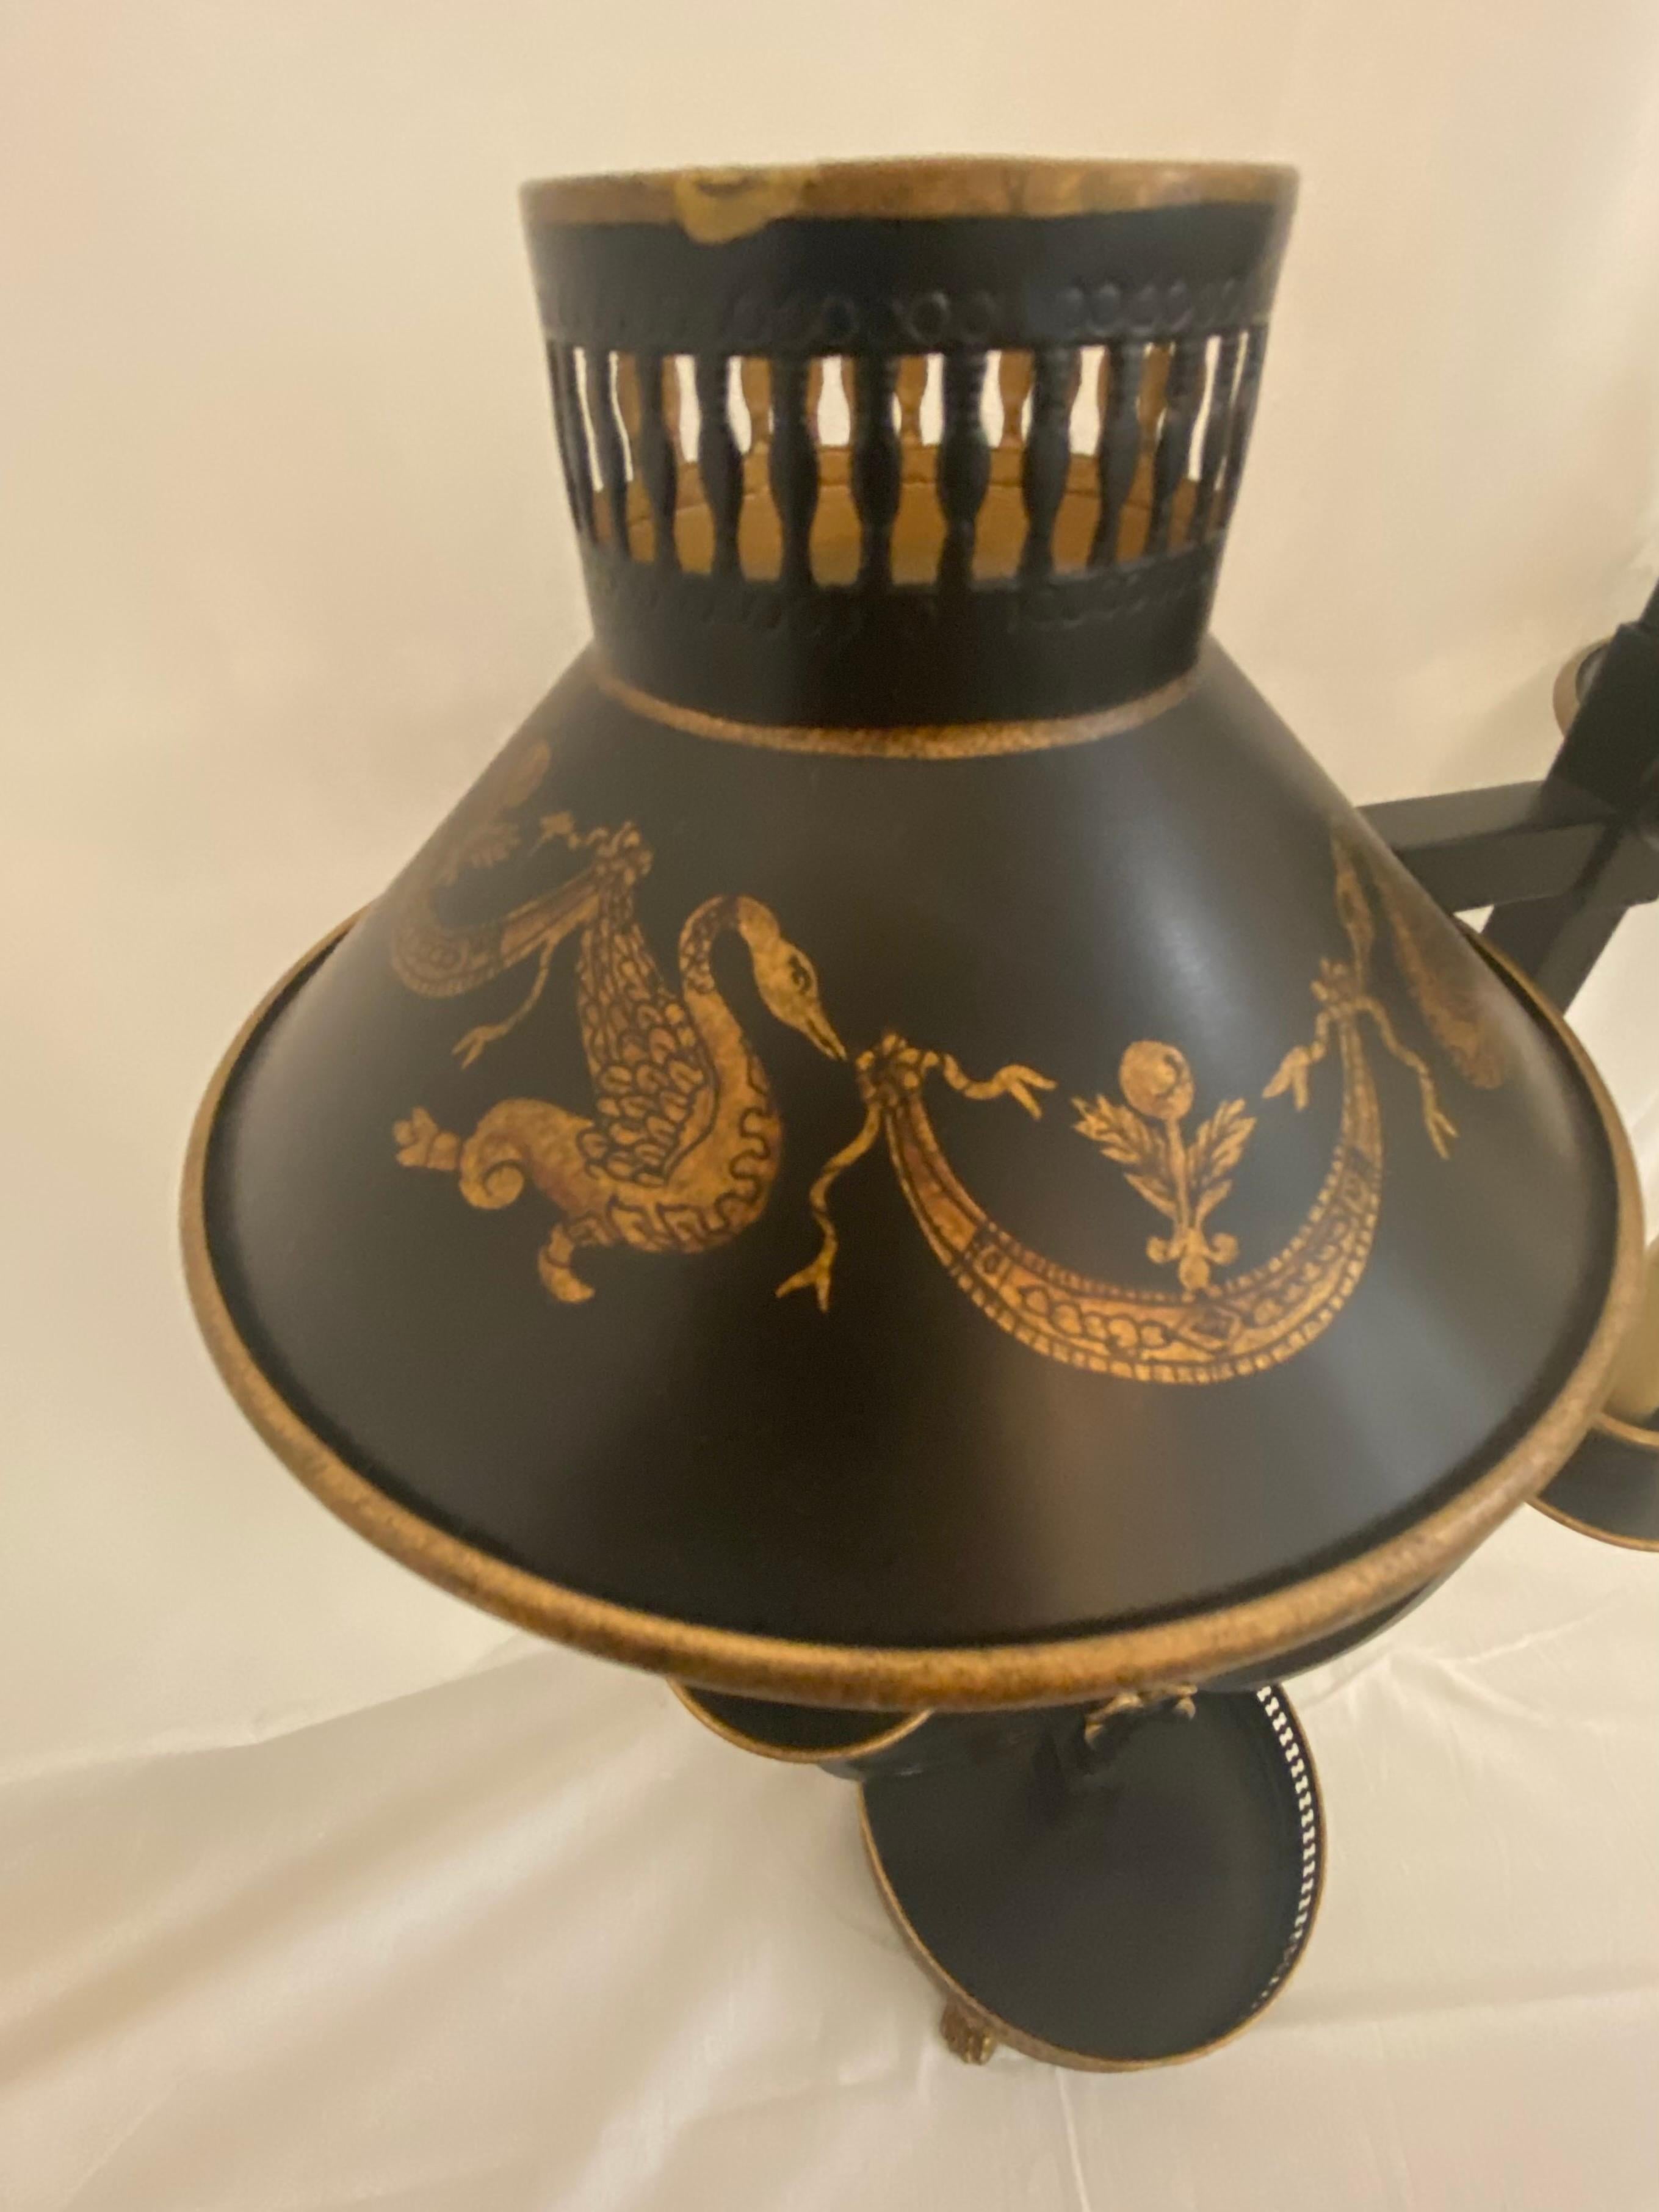 Vergoldete, zweiflammige Bouillotte-Lampe, Jeanne Reed's Ltd, 21. Jahrhundert, höhenverstellbare, durchbrochene Schirme, verziert mit stilisierten Schwänen und Schwänzchen, zentrale Stele, die zwei geschwungene Arme trägt, die in Bobeches mit